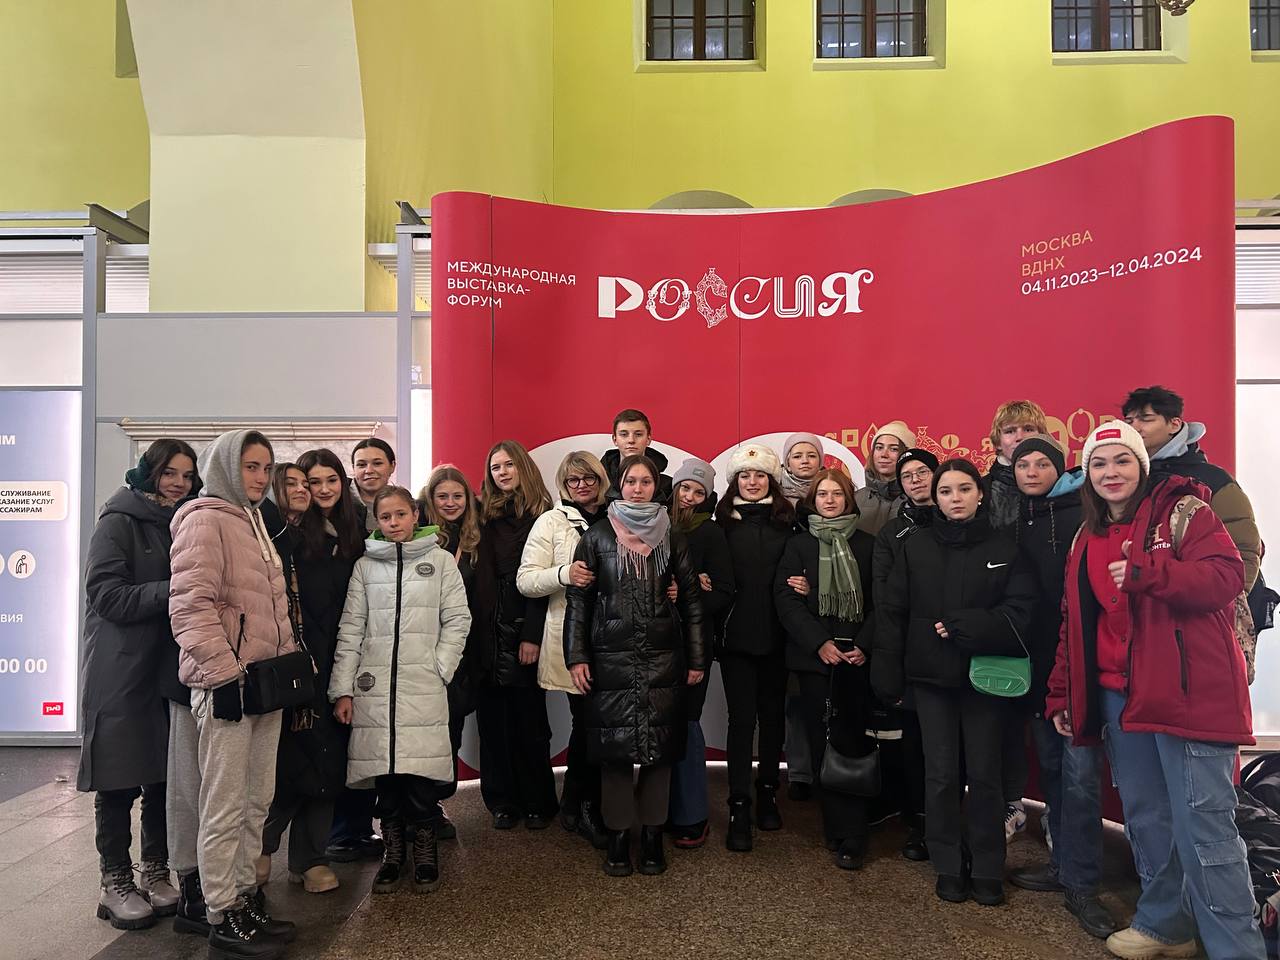 Мариупольские школьники посетили выставку «Россия» на ВДНХ.